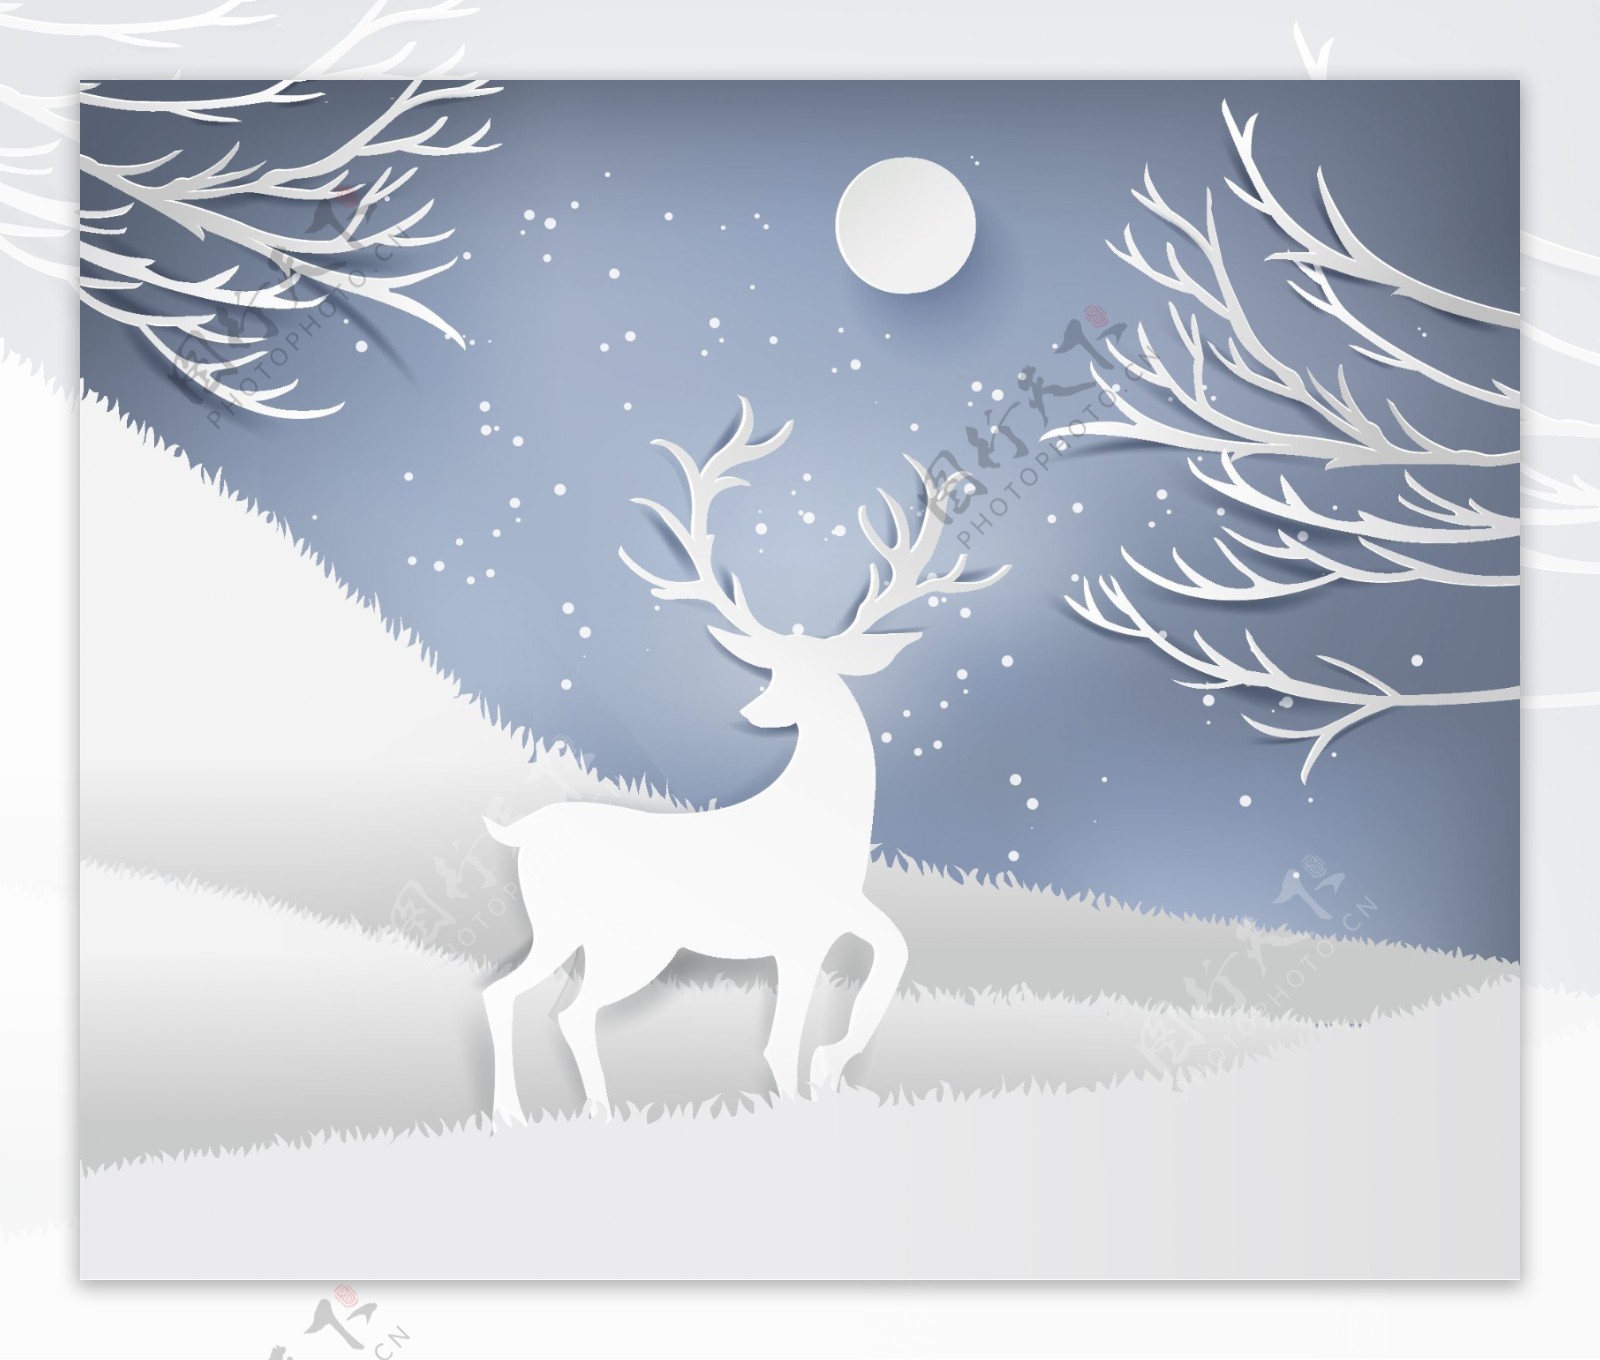 冬天立体麋鹿背景墙插画